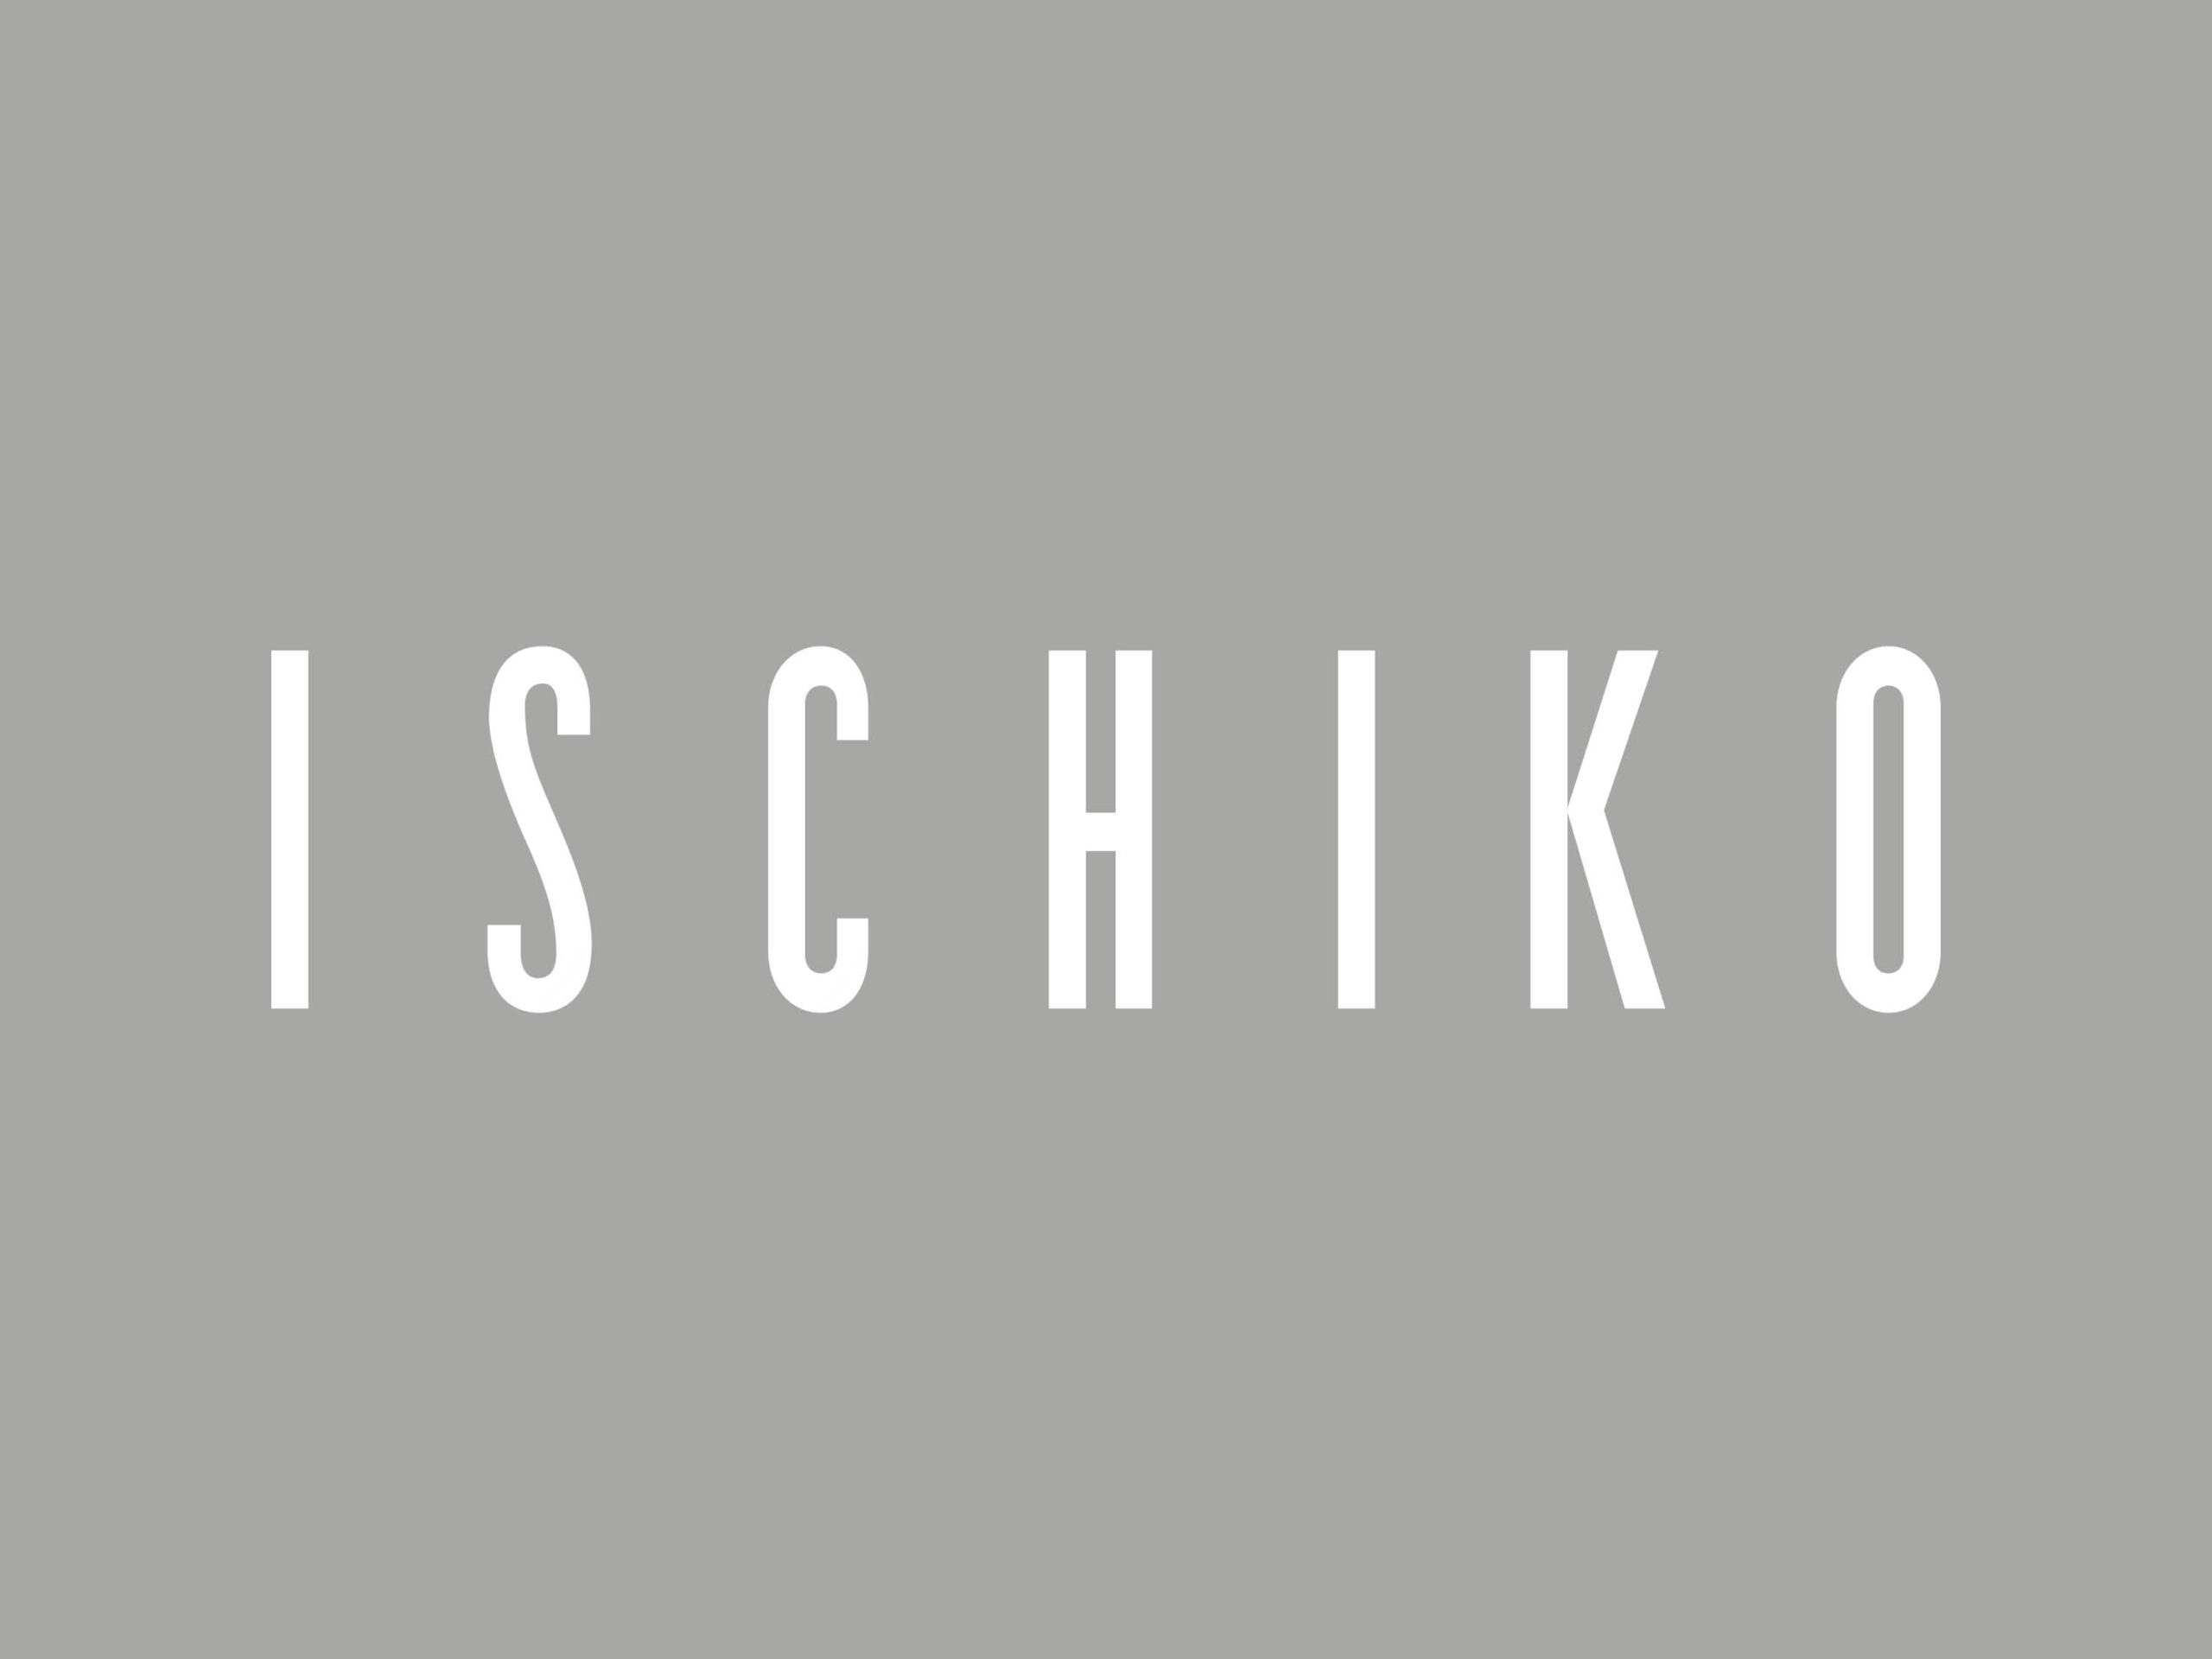 Ischiko_12